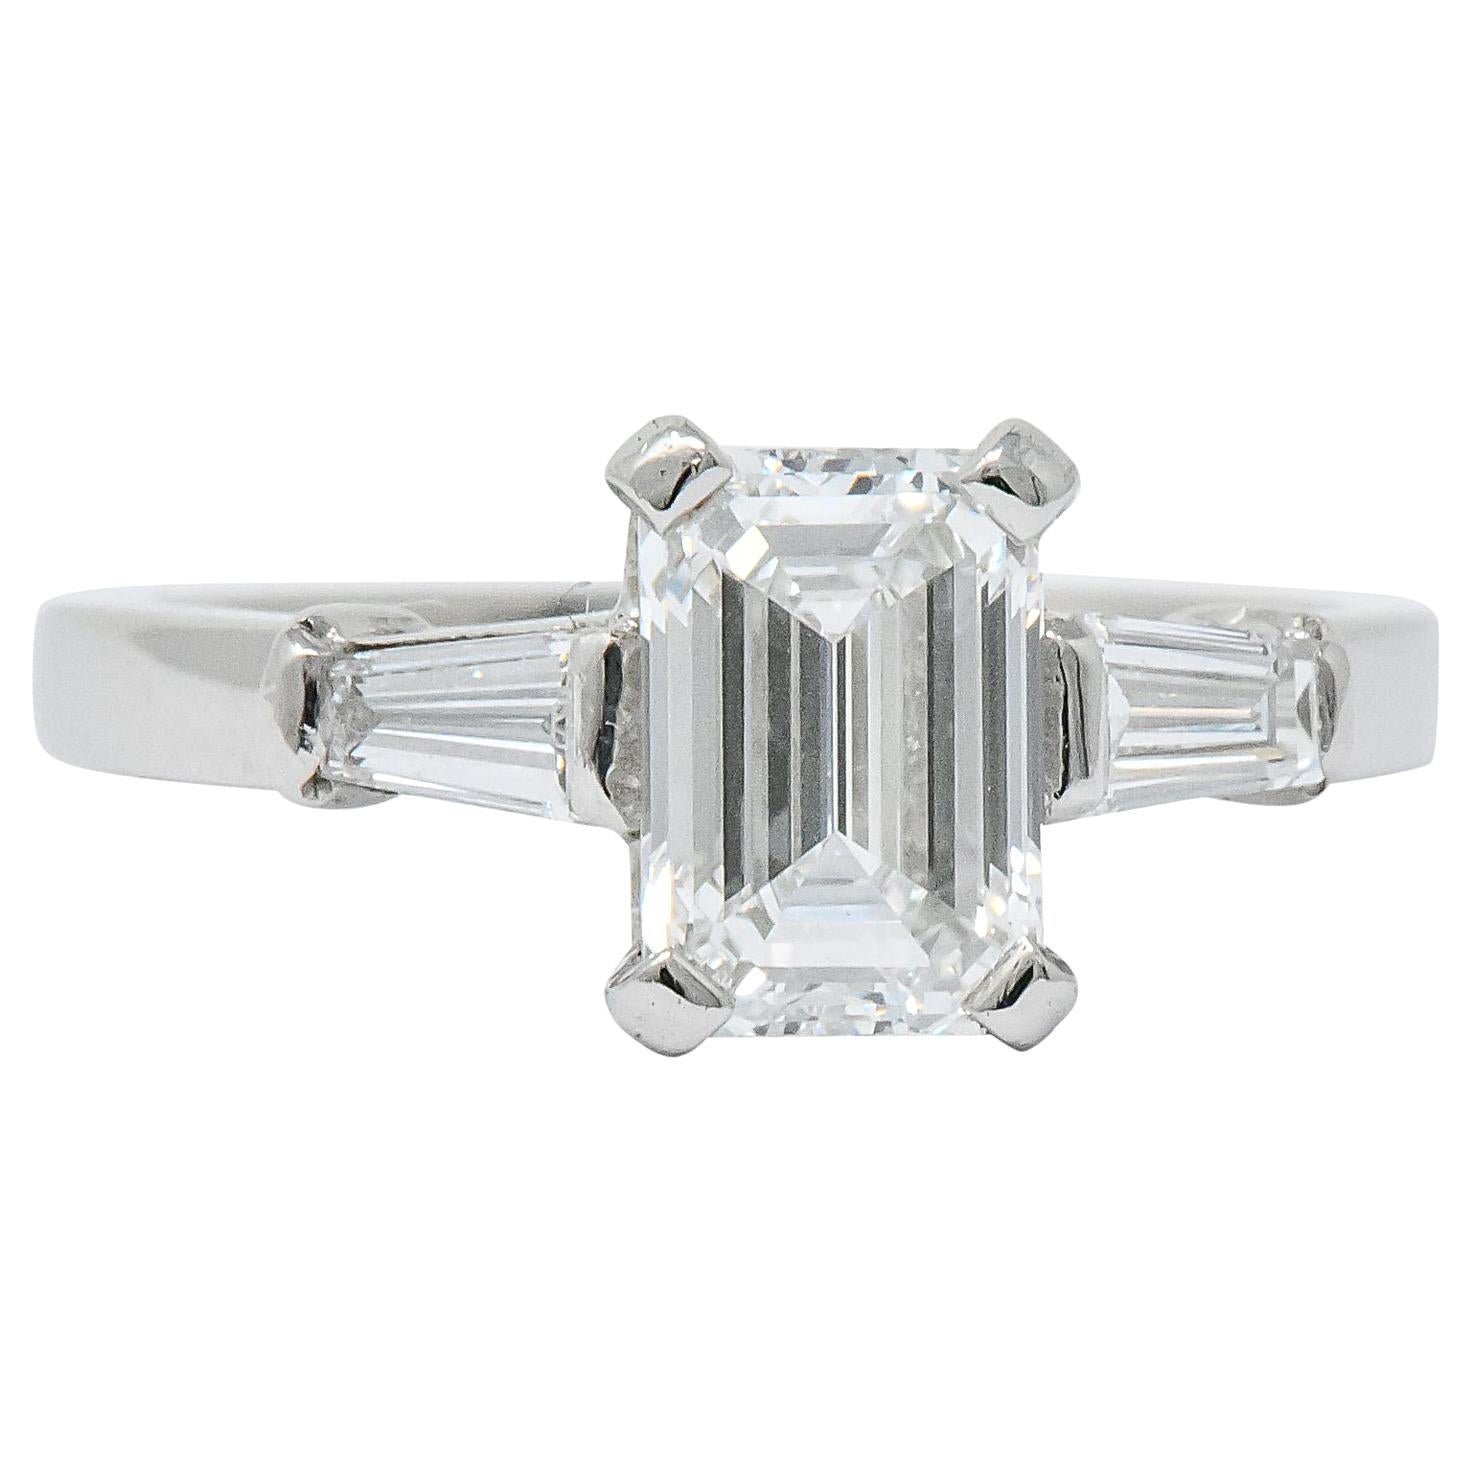 Bulgari 1.48 Carat Emerald Cut Diamond Platinum Engagement Ring GIA